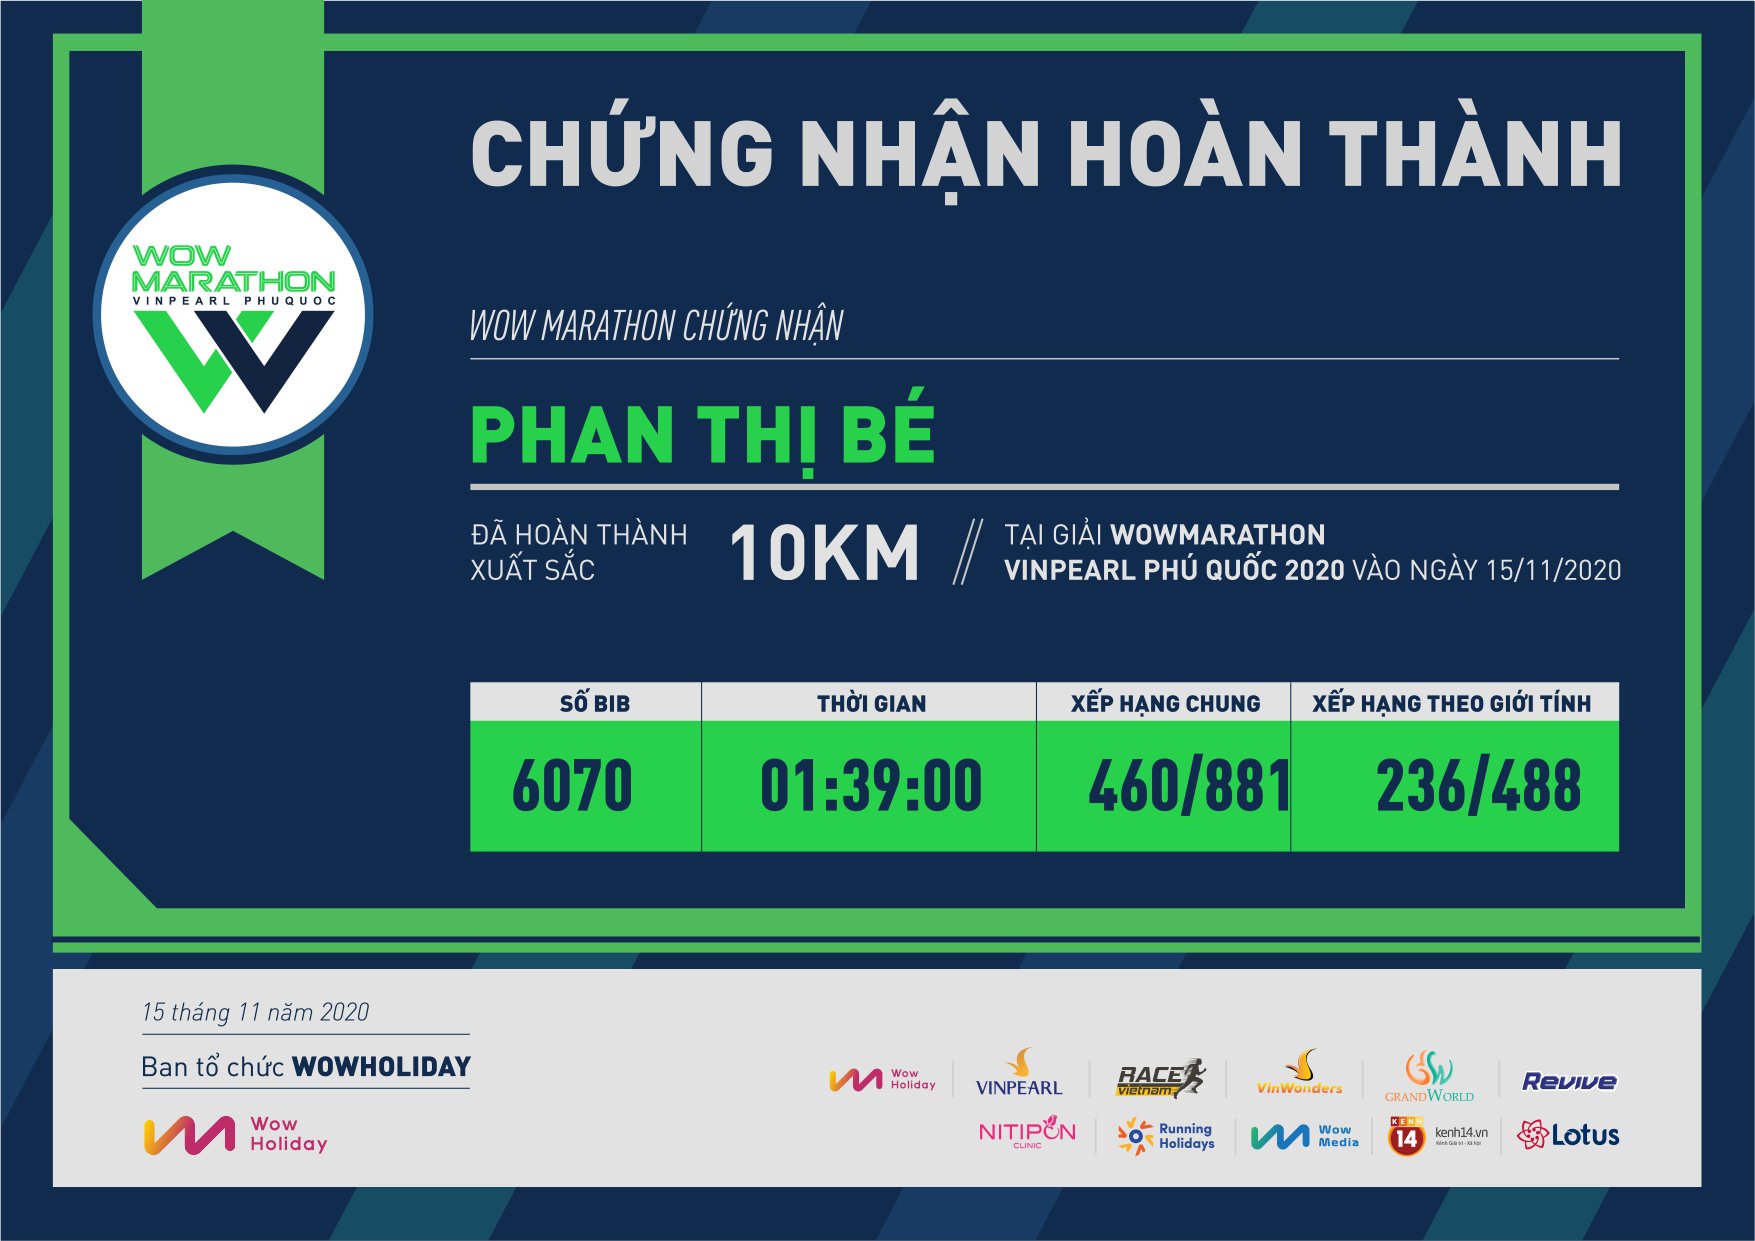 6070 - Phan Thị Bé